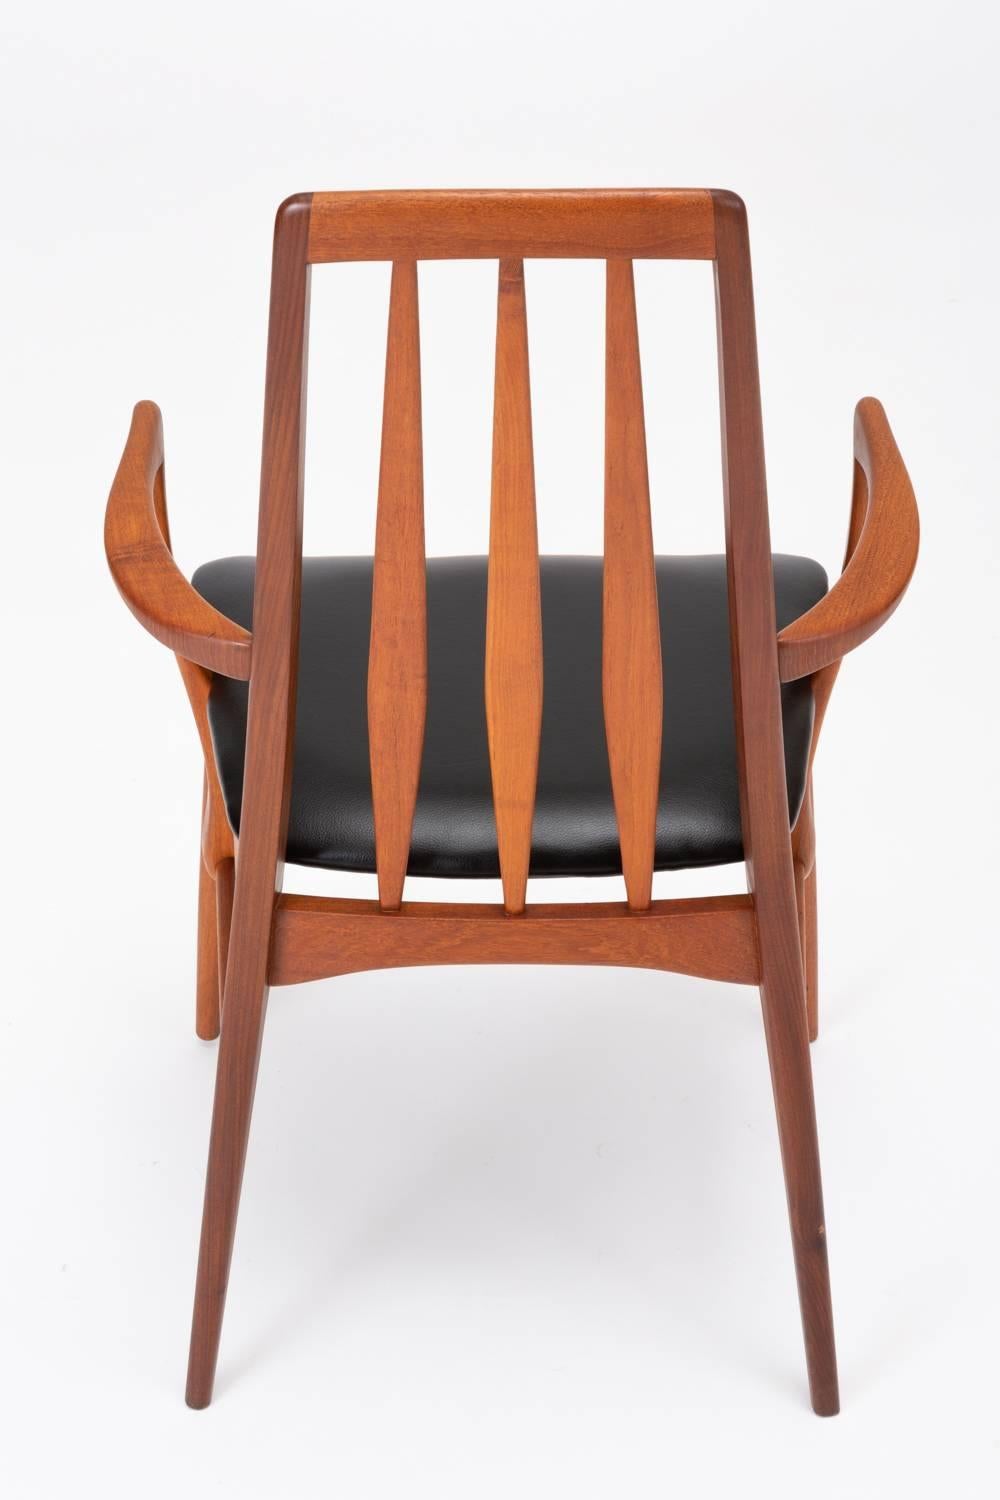 Pair of Eva Captain Chairs by Niels Koefoed for Koefoeds Mobelfabrik 2